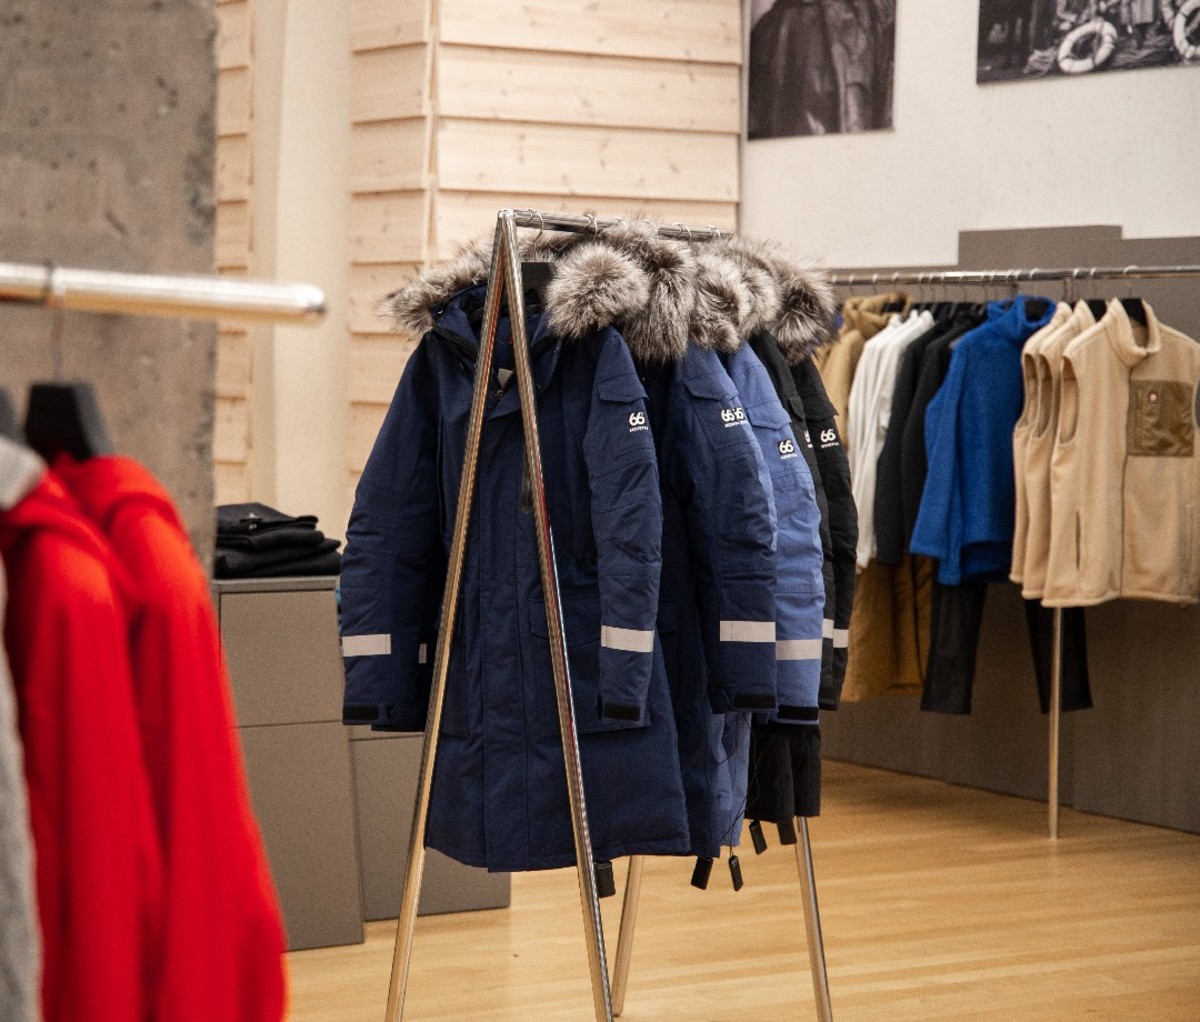 66°North coats on display